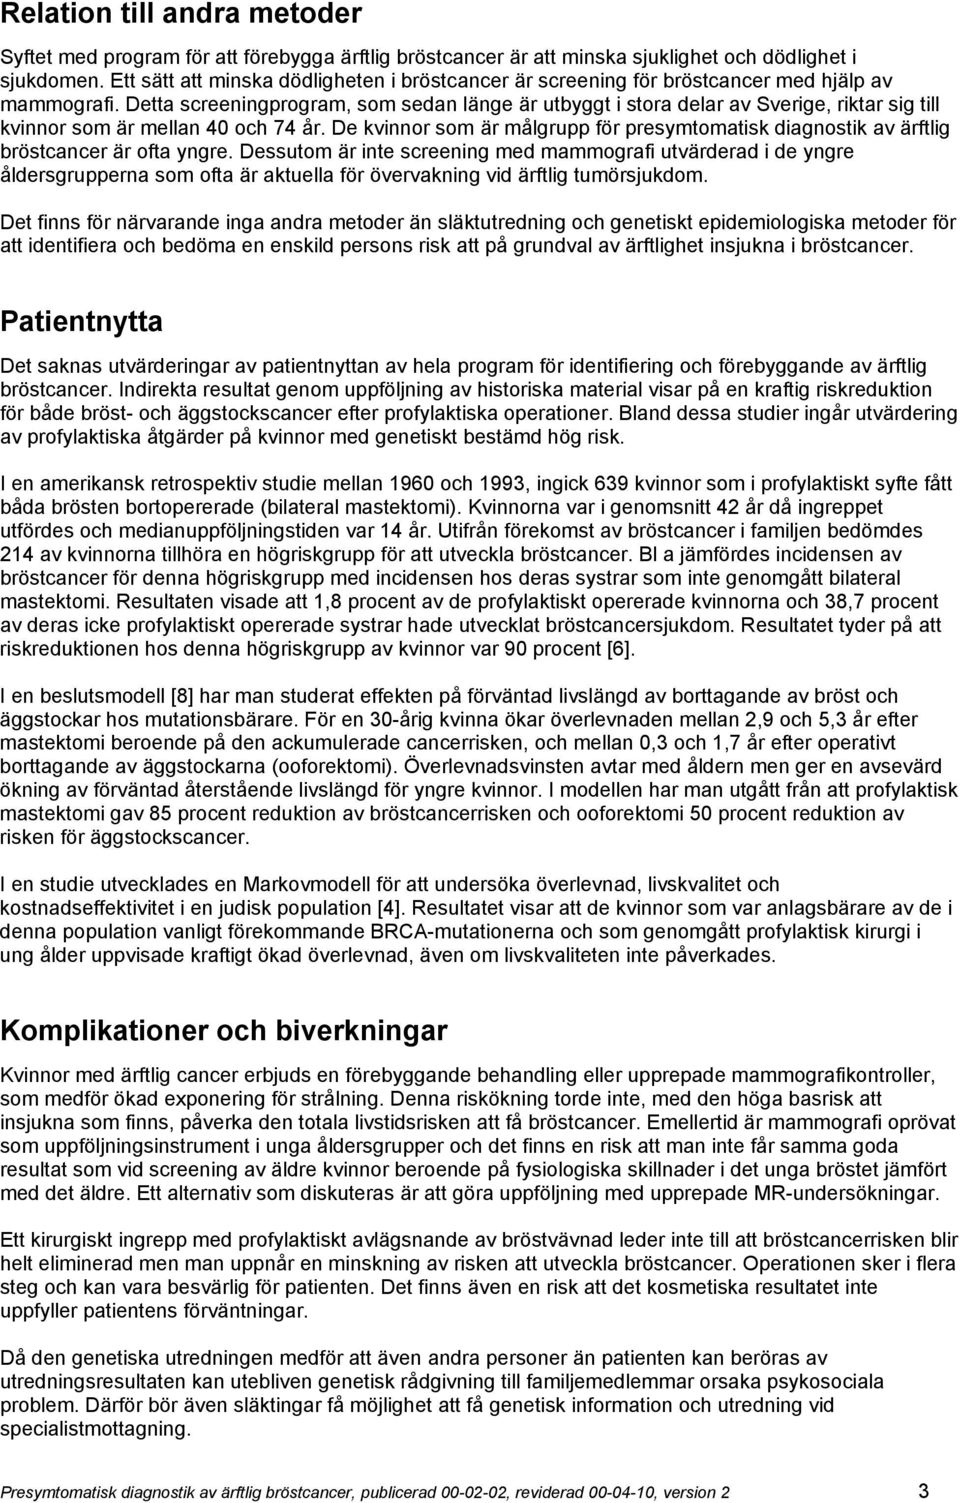 Detta screeningprogram, som sedan länge är utbyggt i stora delar av Sverige, riktar sig till kvinnor som är mellan 40 och 74 år.